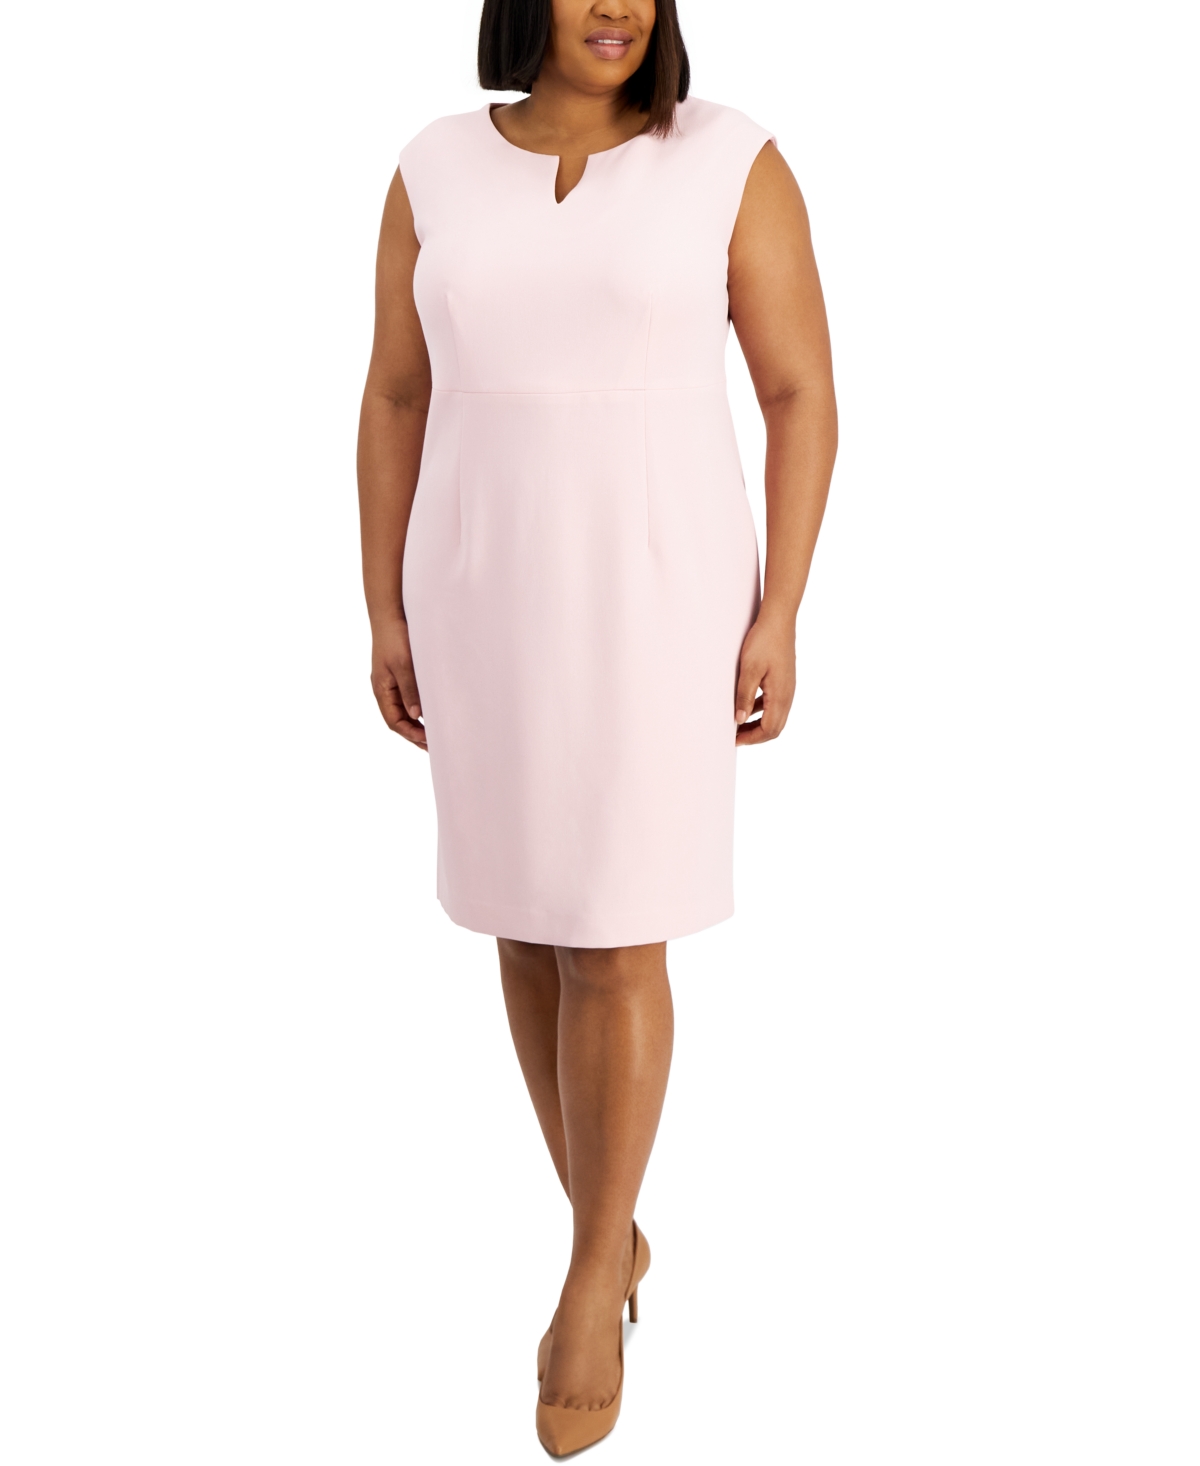 Plus Size Sleeveless Sheath Dress - Tutu Pink